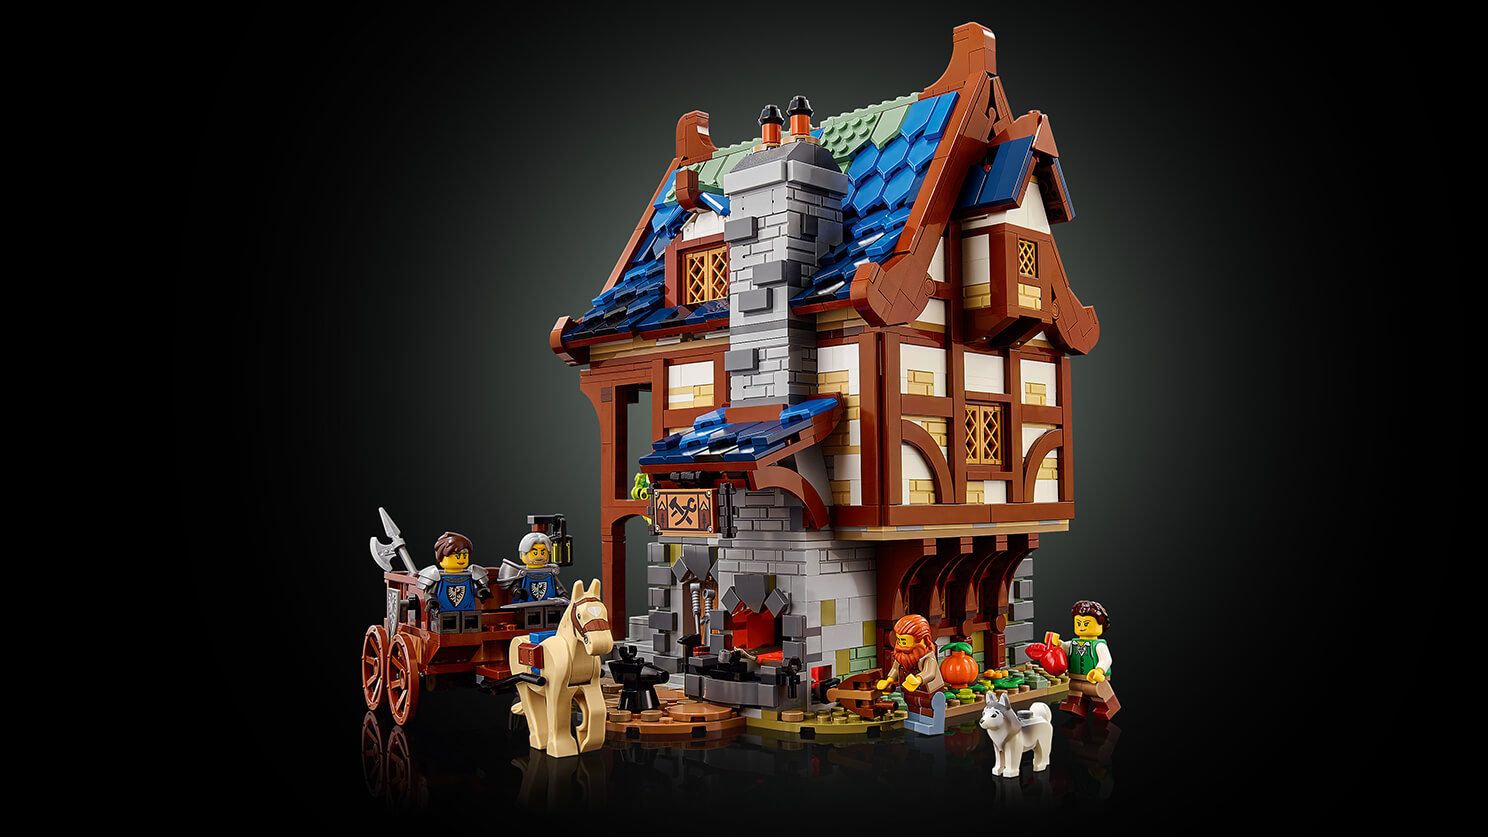 LEGO Ideas 21325 Mittelalterliche Schmiede LEGO_21325_WEB_SEC03_1488.jpg